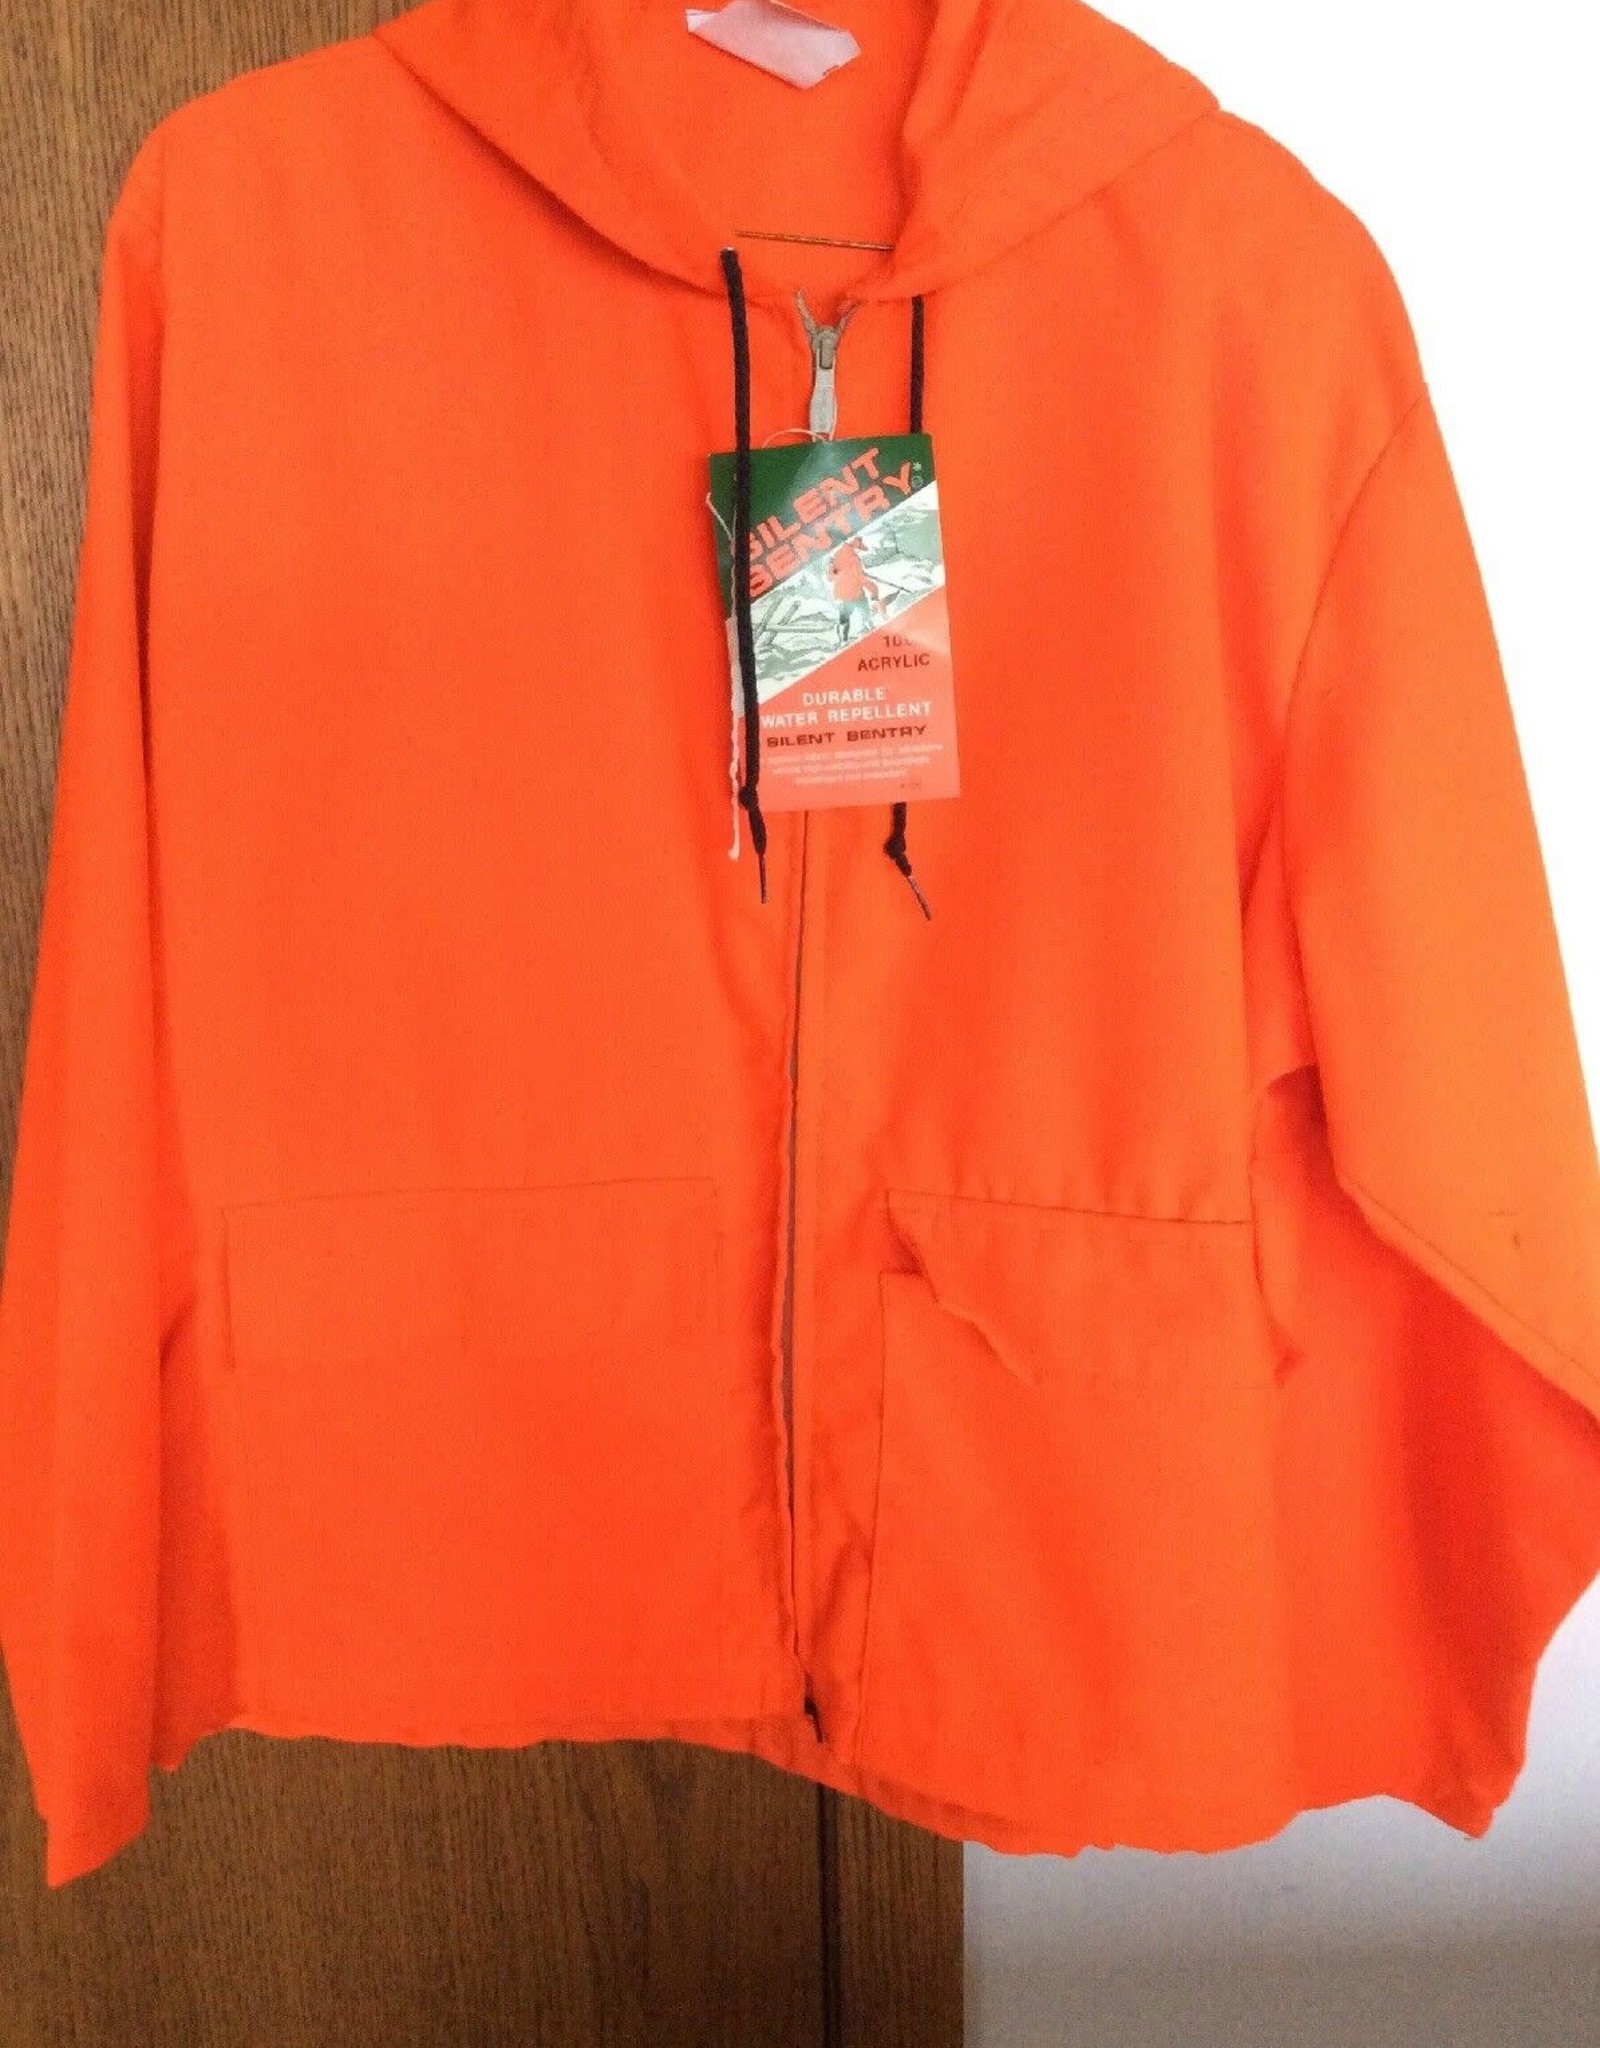 Youth XL Blaze Orange Hunting Jacket